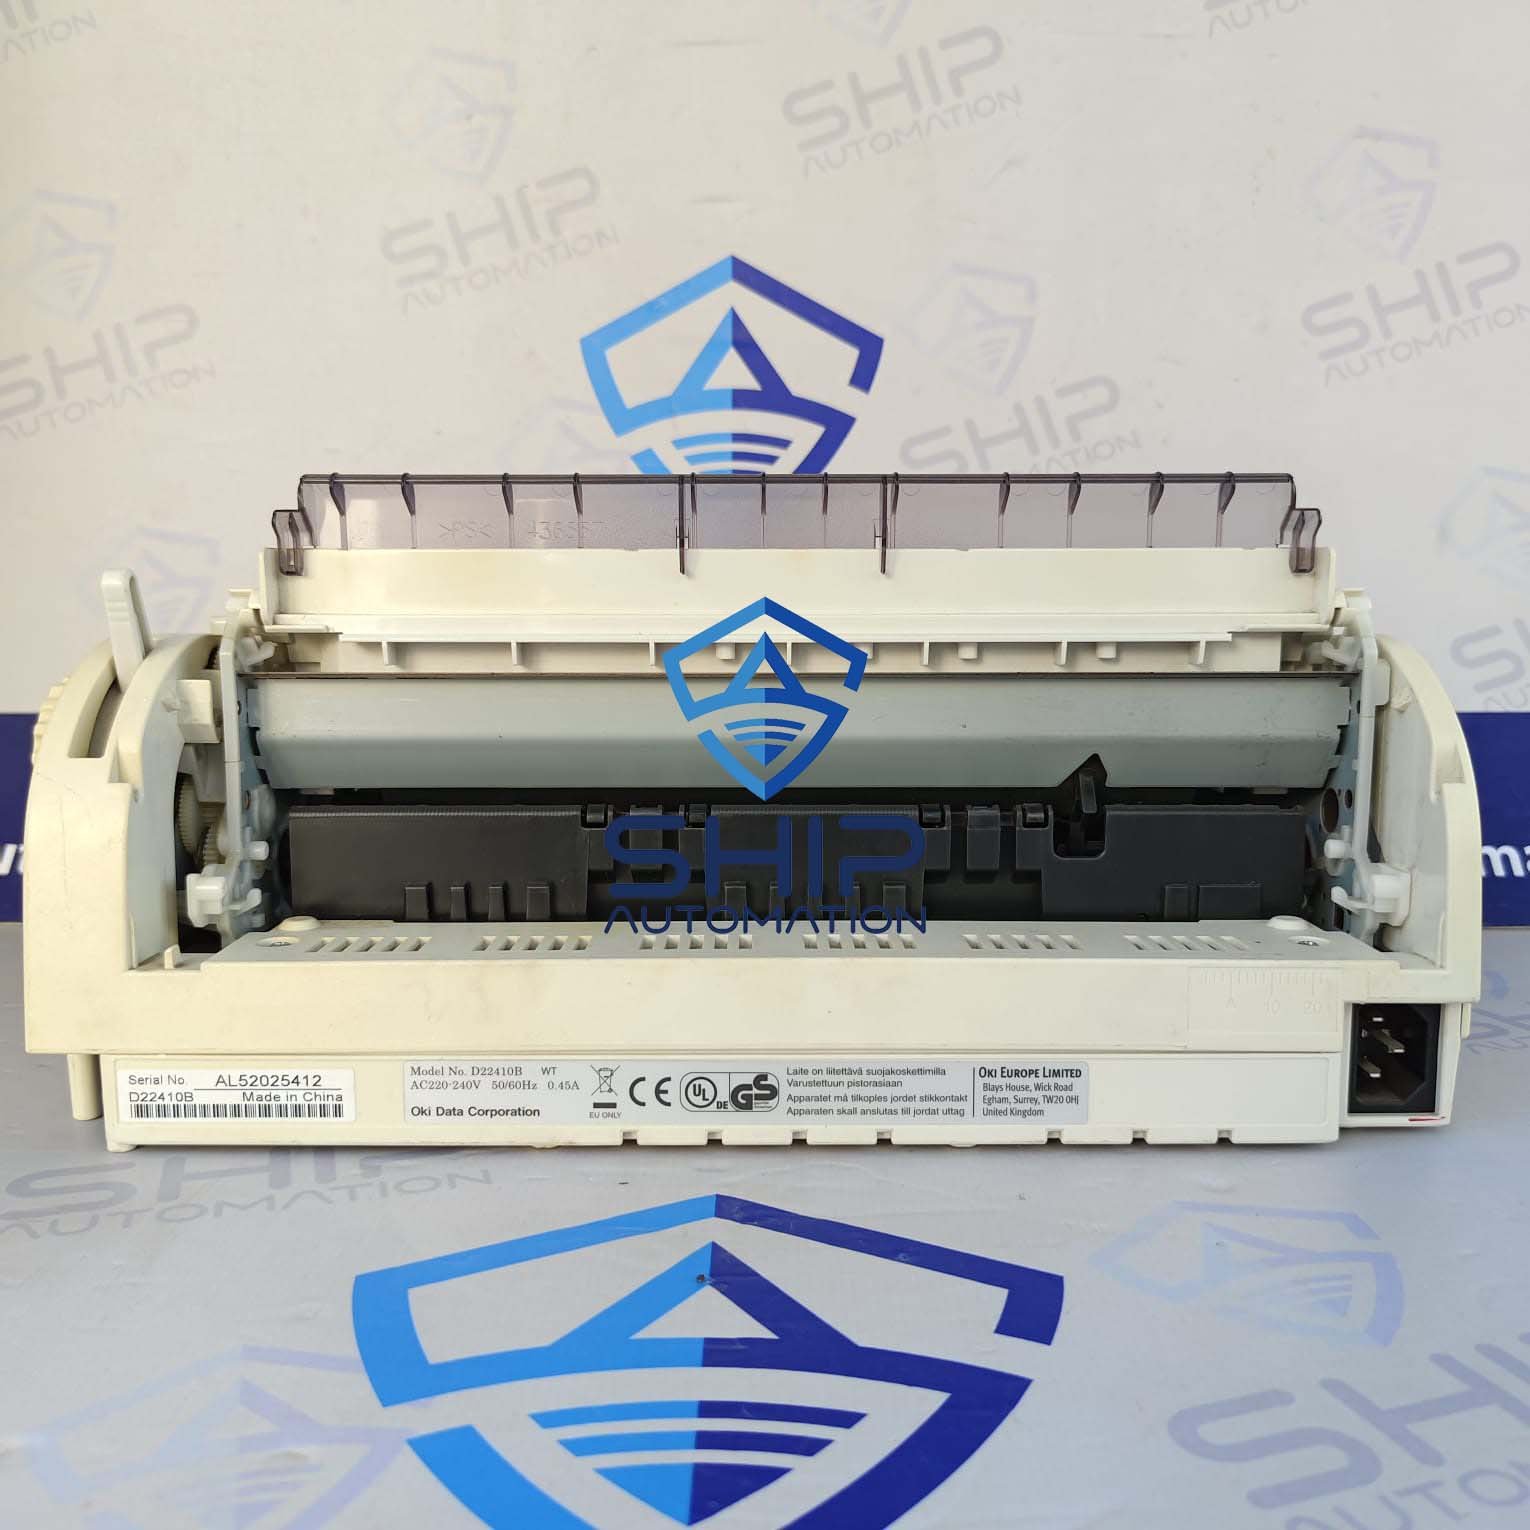 OKI Microline 1190 ECO | Dot Matrix Printer